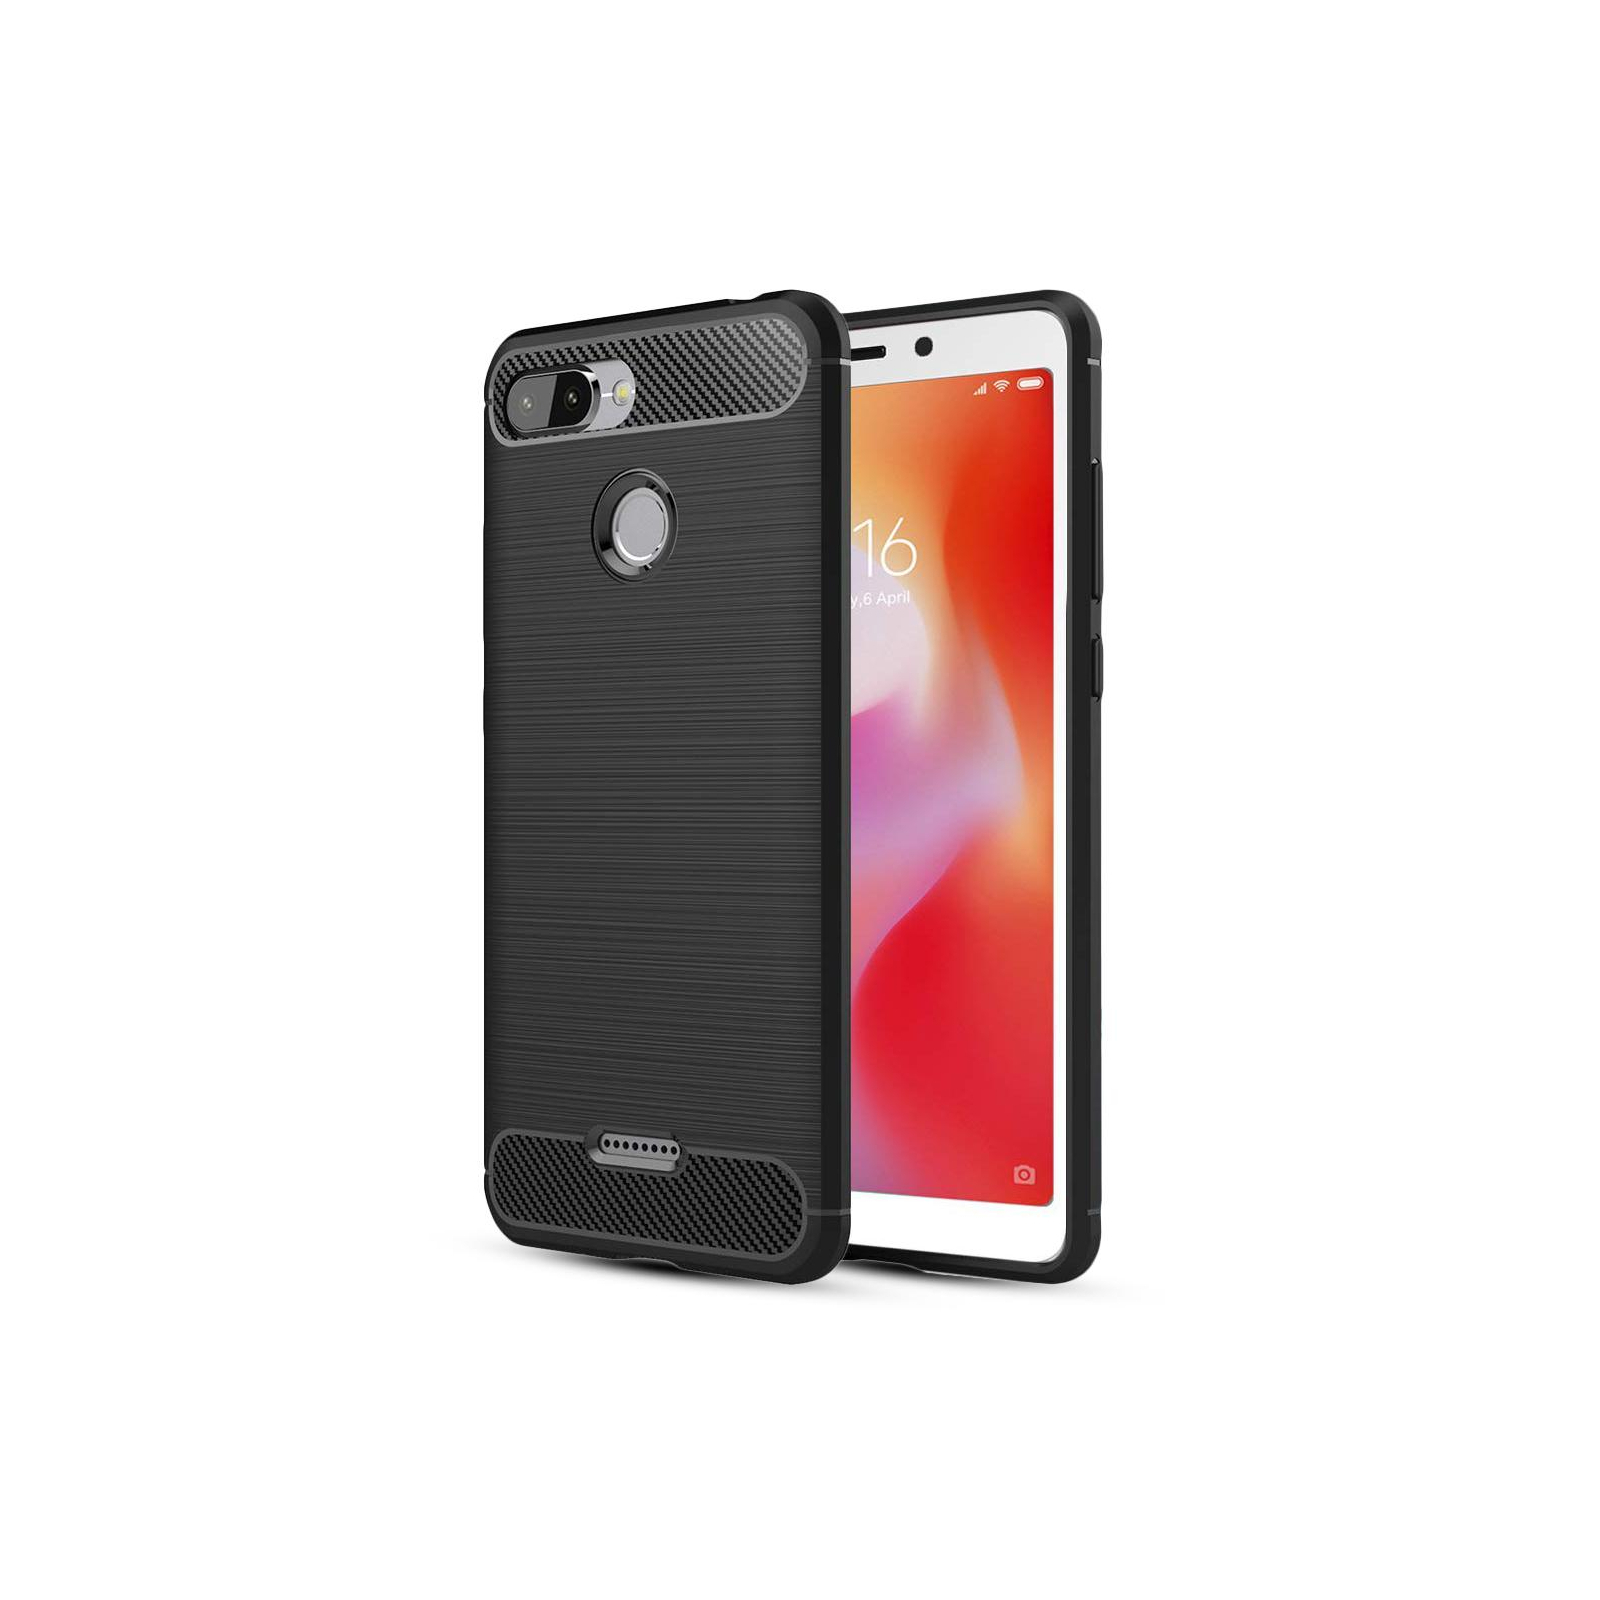 Чехол для мобильного телефона Laudtec для Xiaomi Redmi 6 Carbon Fiber (Black) (LT-XR6) изображение 2